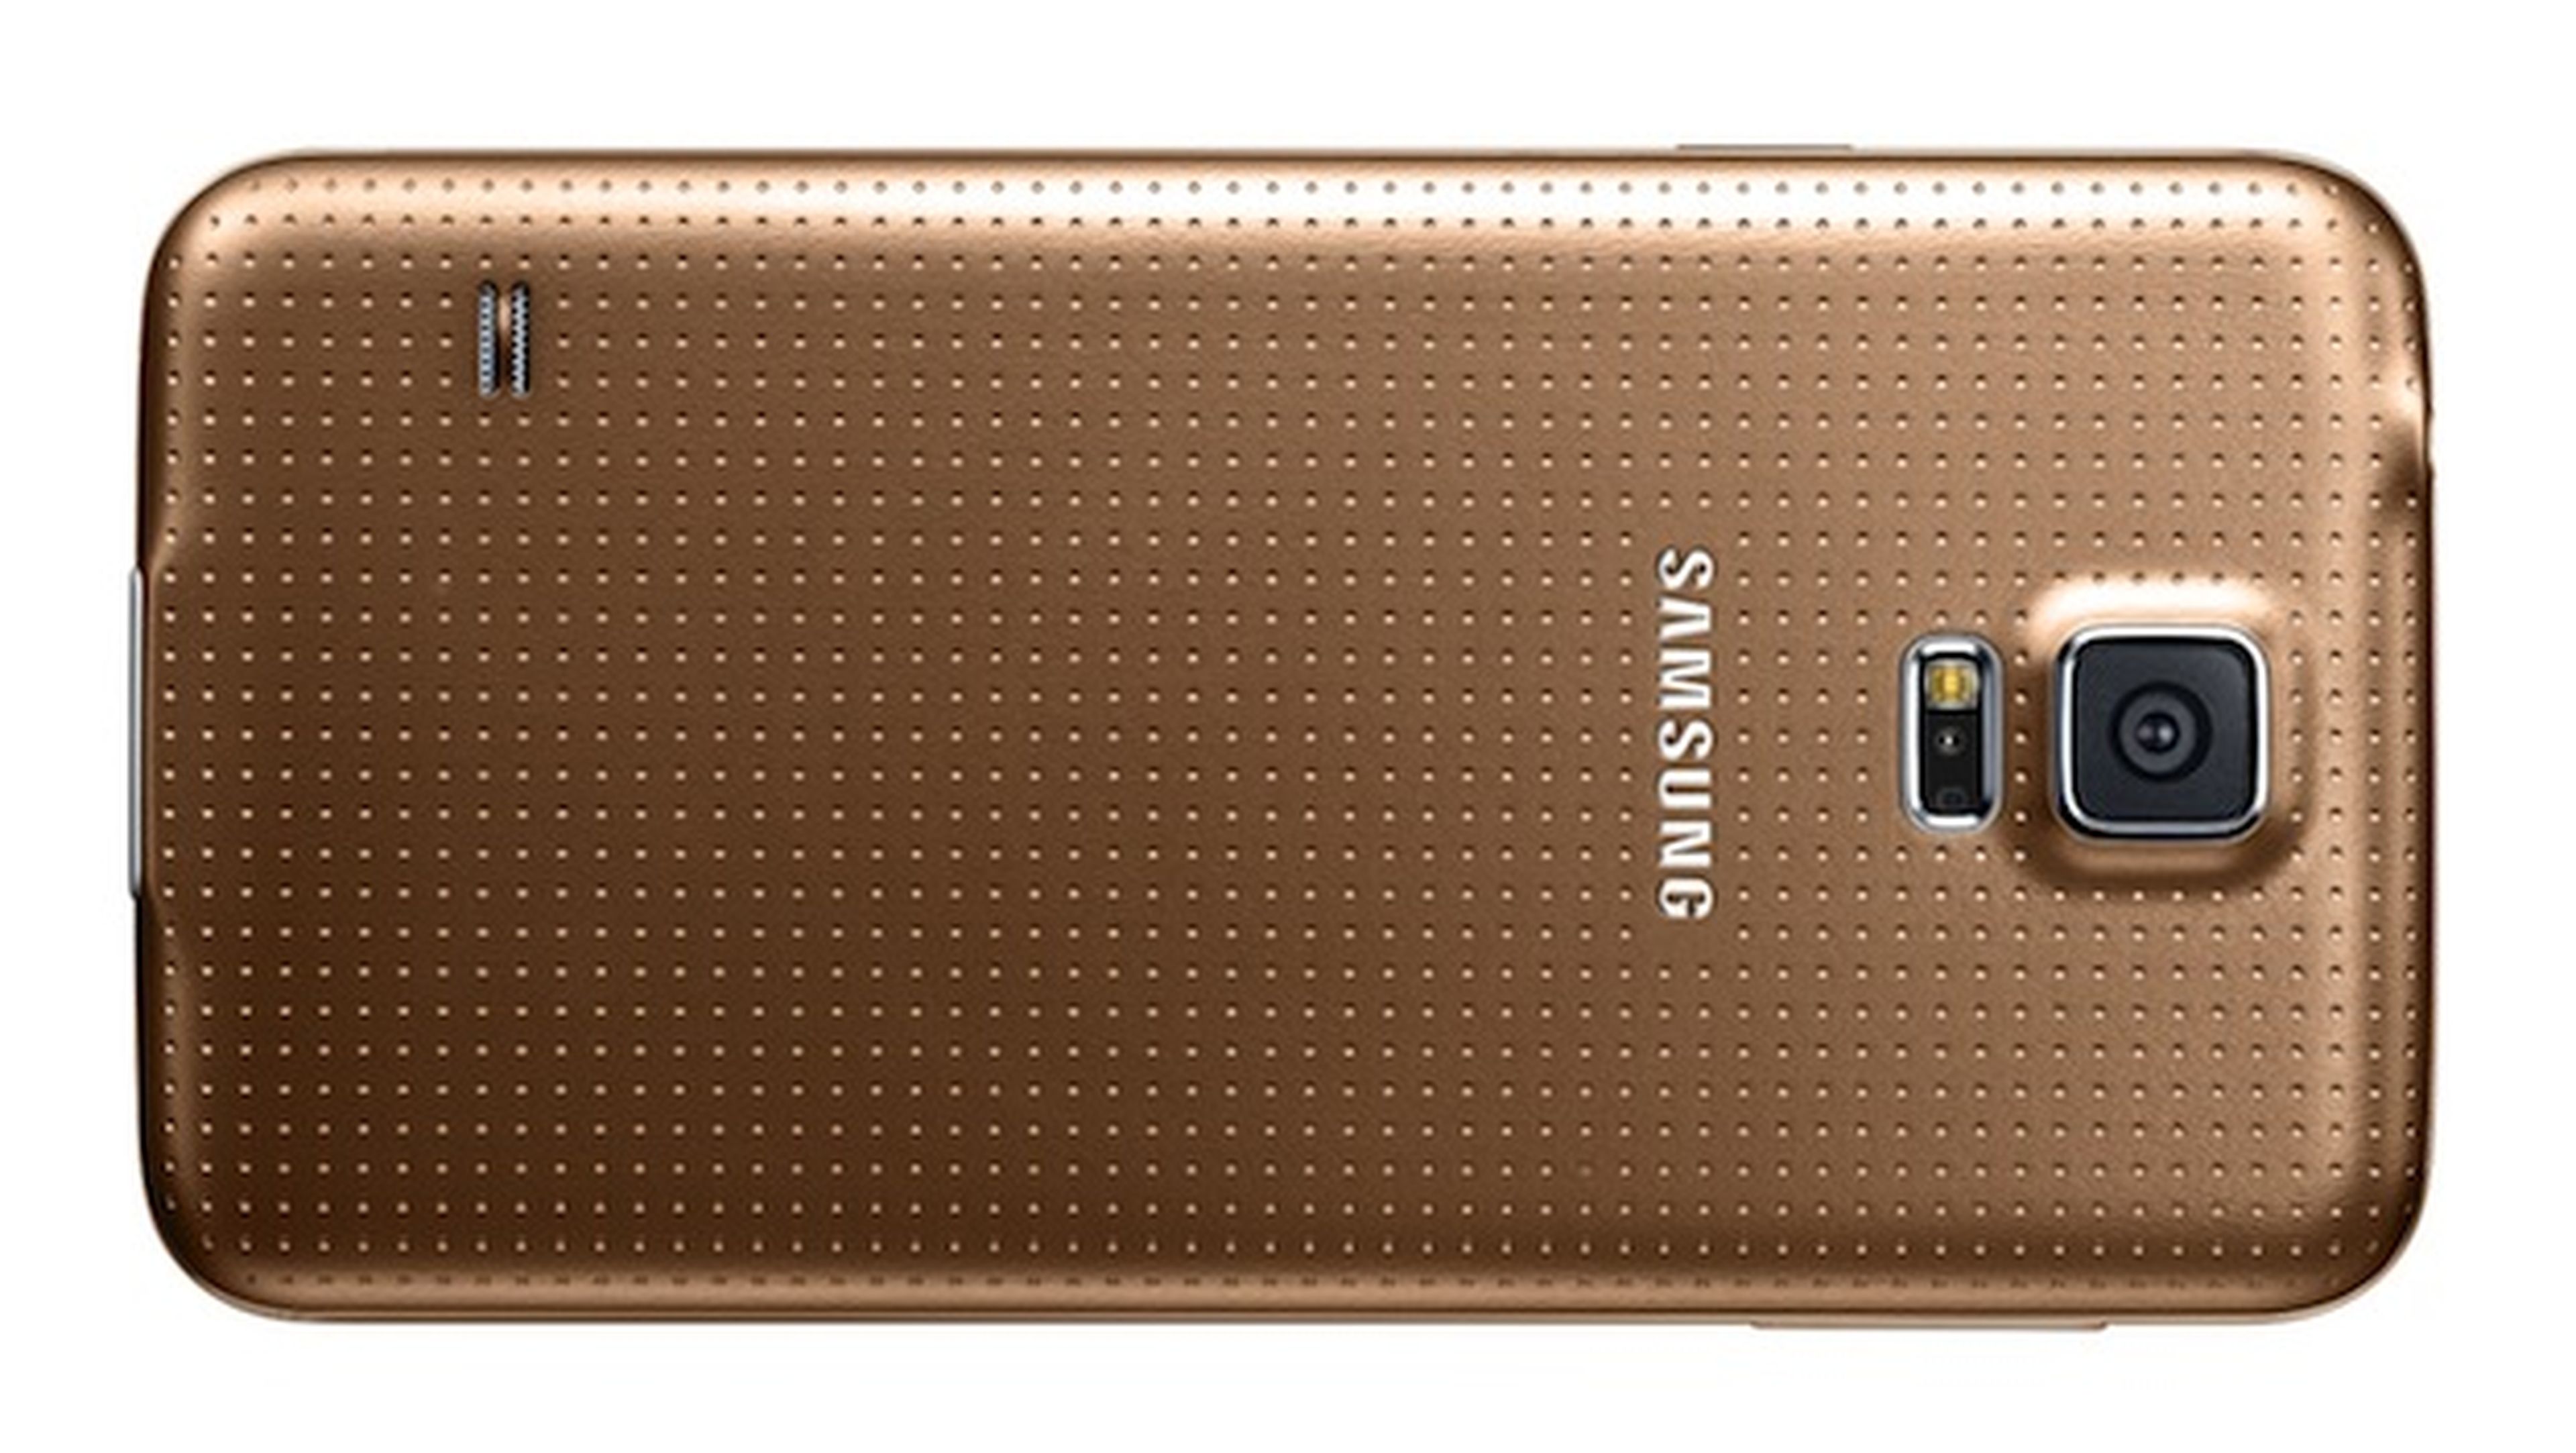 Vodafone lanzará en exclusiva el Samusng Galaxy S5 Gold